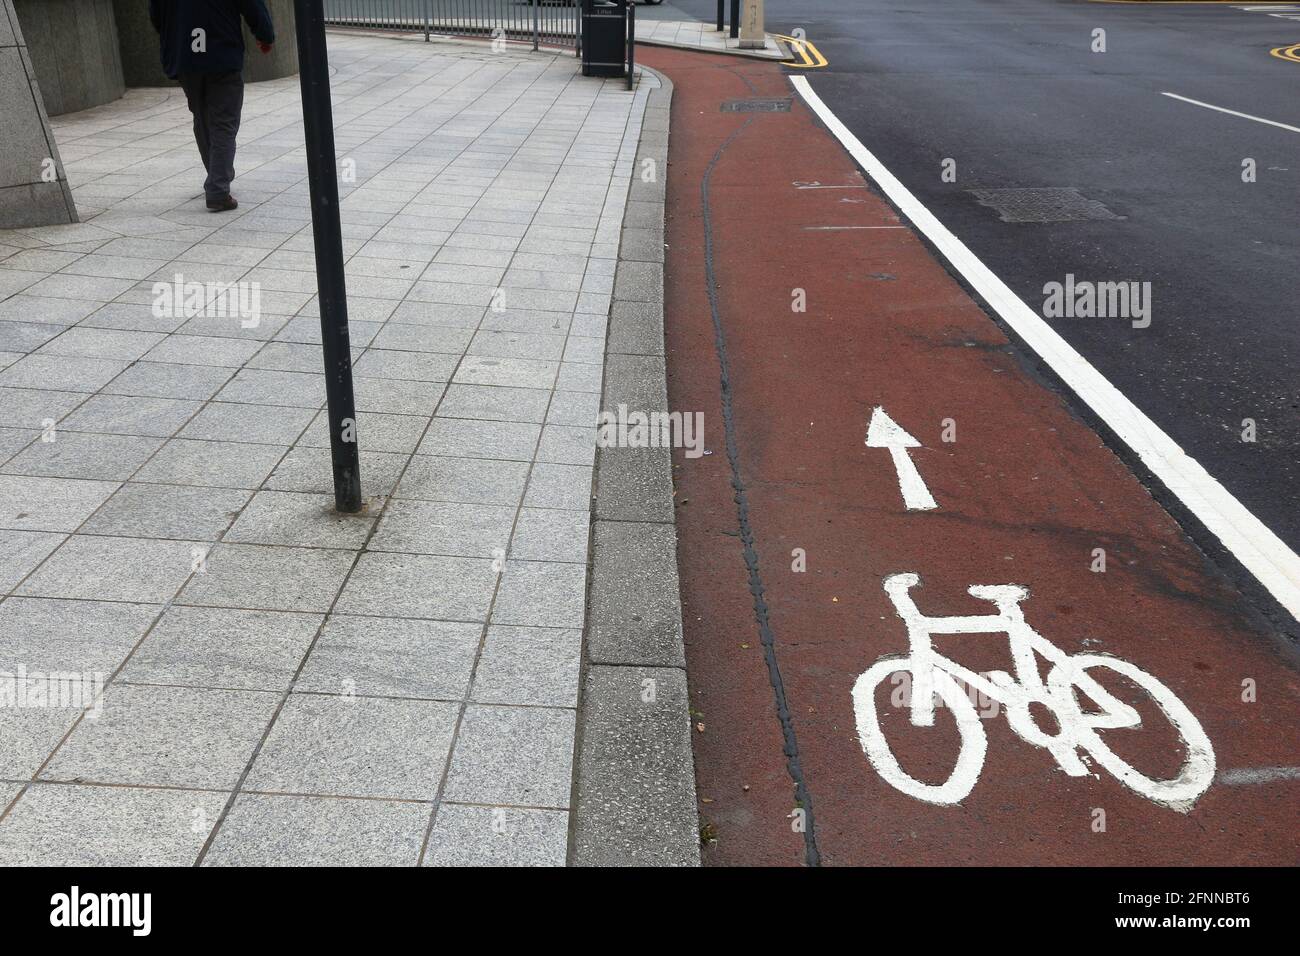 Piste cyclable dans la ville - Leeds, Royaume-Uni. Piste de vélo. Banque D'Images